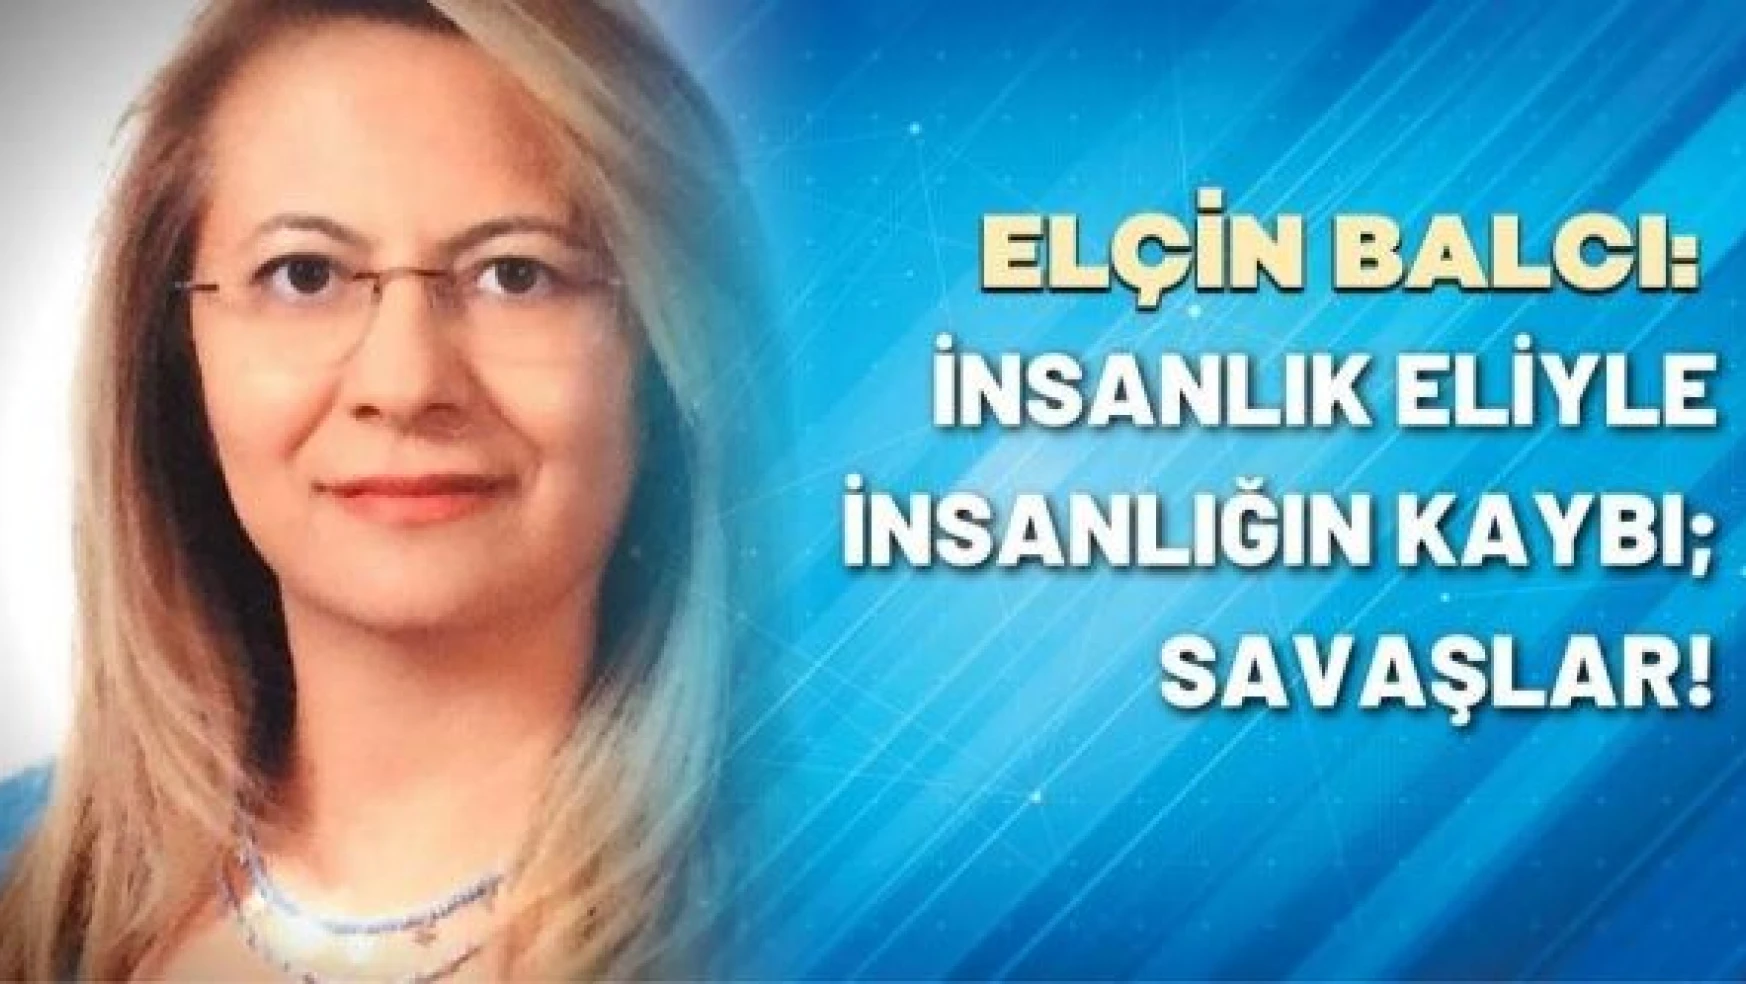 Prof. Dr. Elçin Balcı yazdı: İnsanlık eliyle insanlığın kaybı savaşlar!